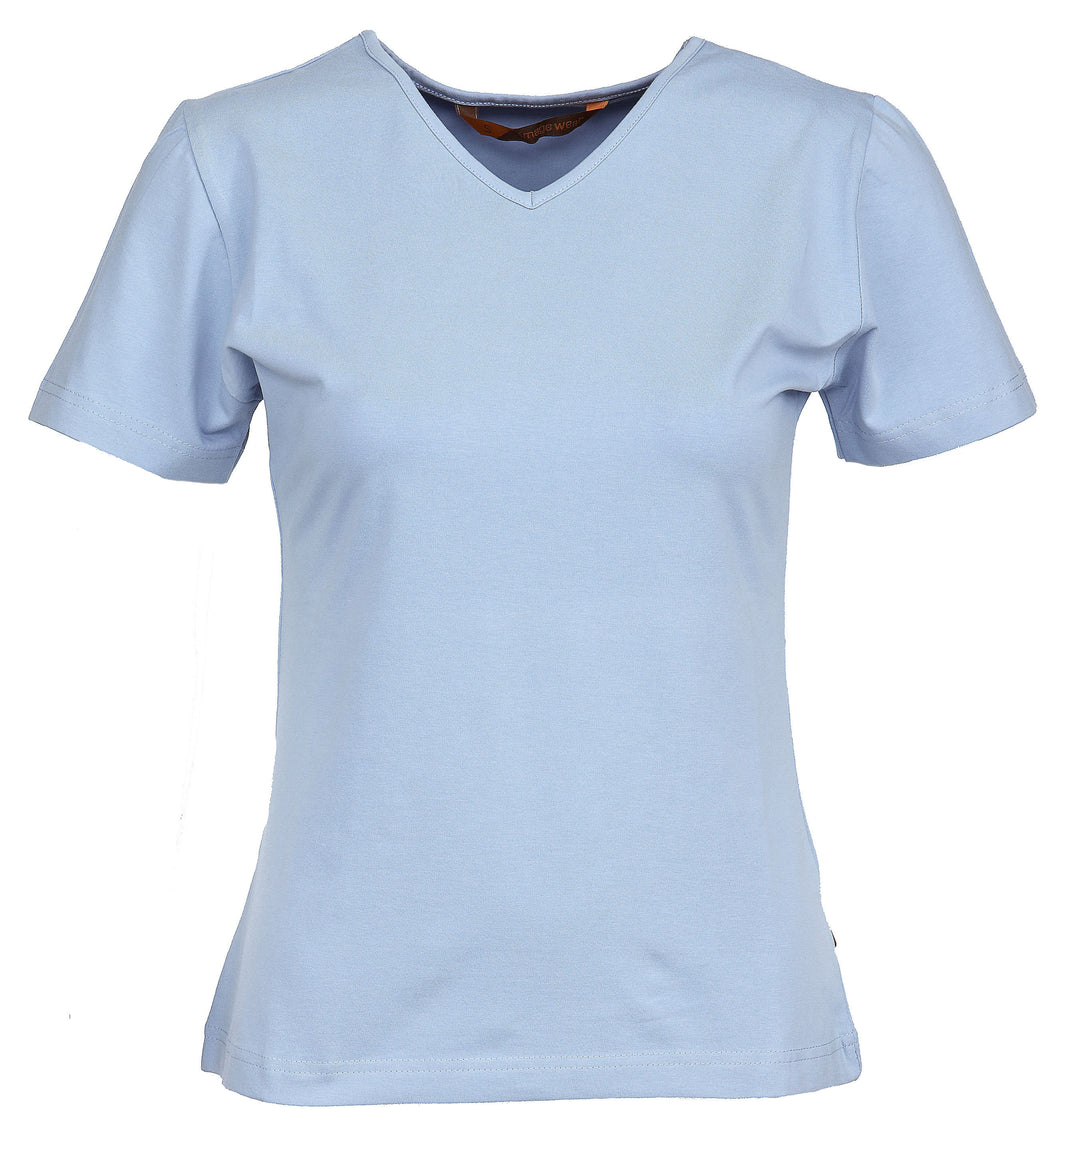 Naisten lyhythihainen vaaleansininen T-paita v-pääntiellä. Malli on aavistuksen tyköistuva. Joustava ja laadukas materiaali.